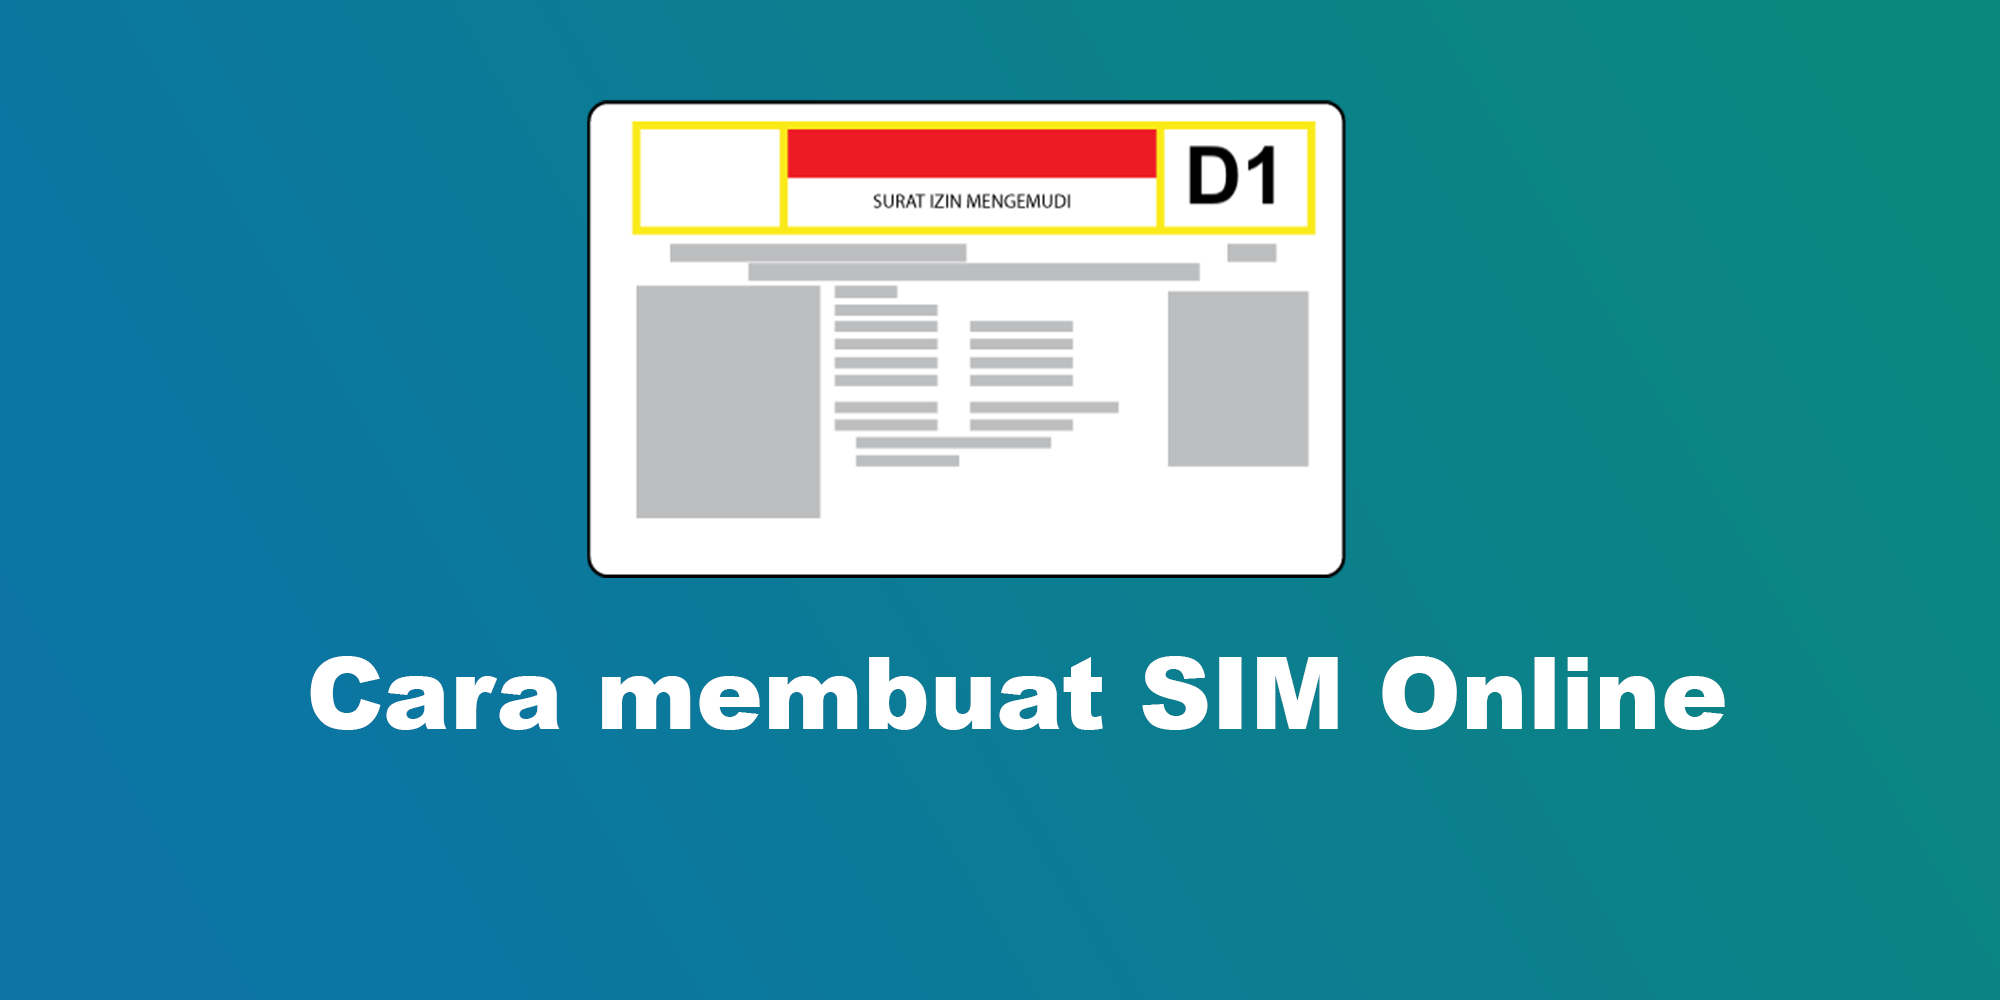 Cara membuat SIM Online Di Tangerang